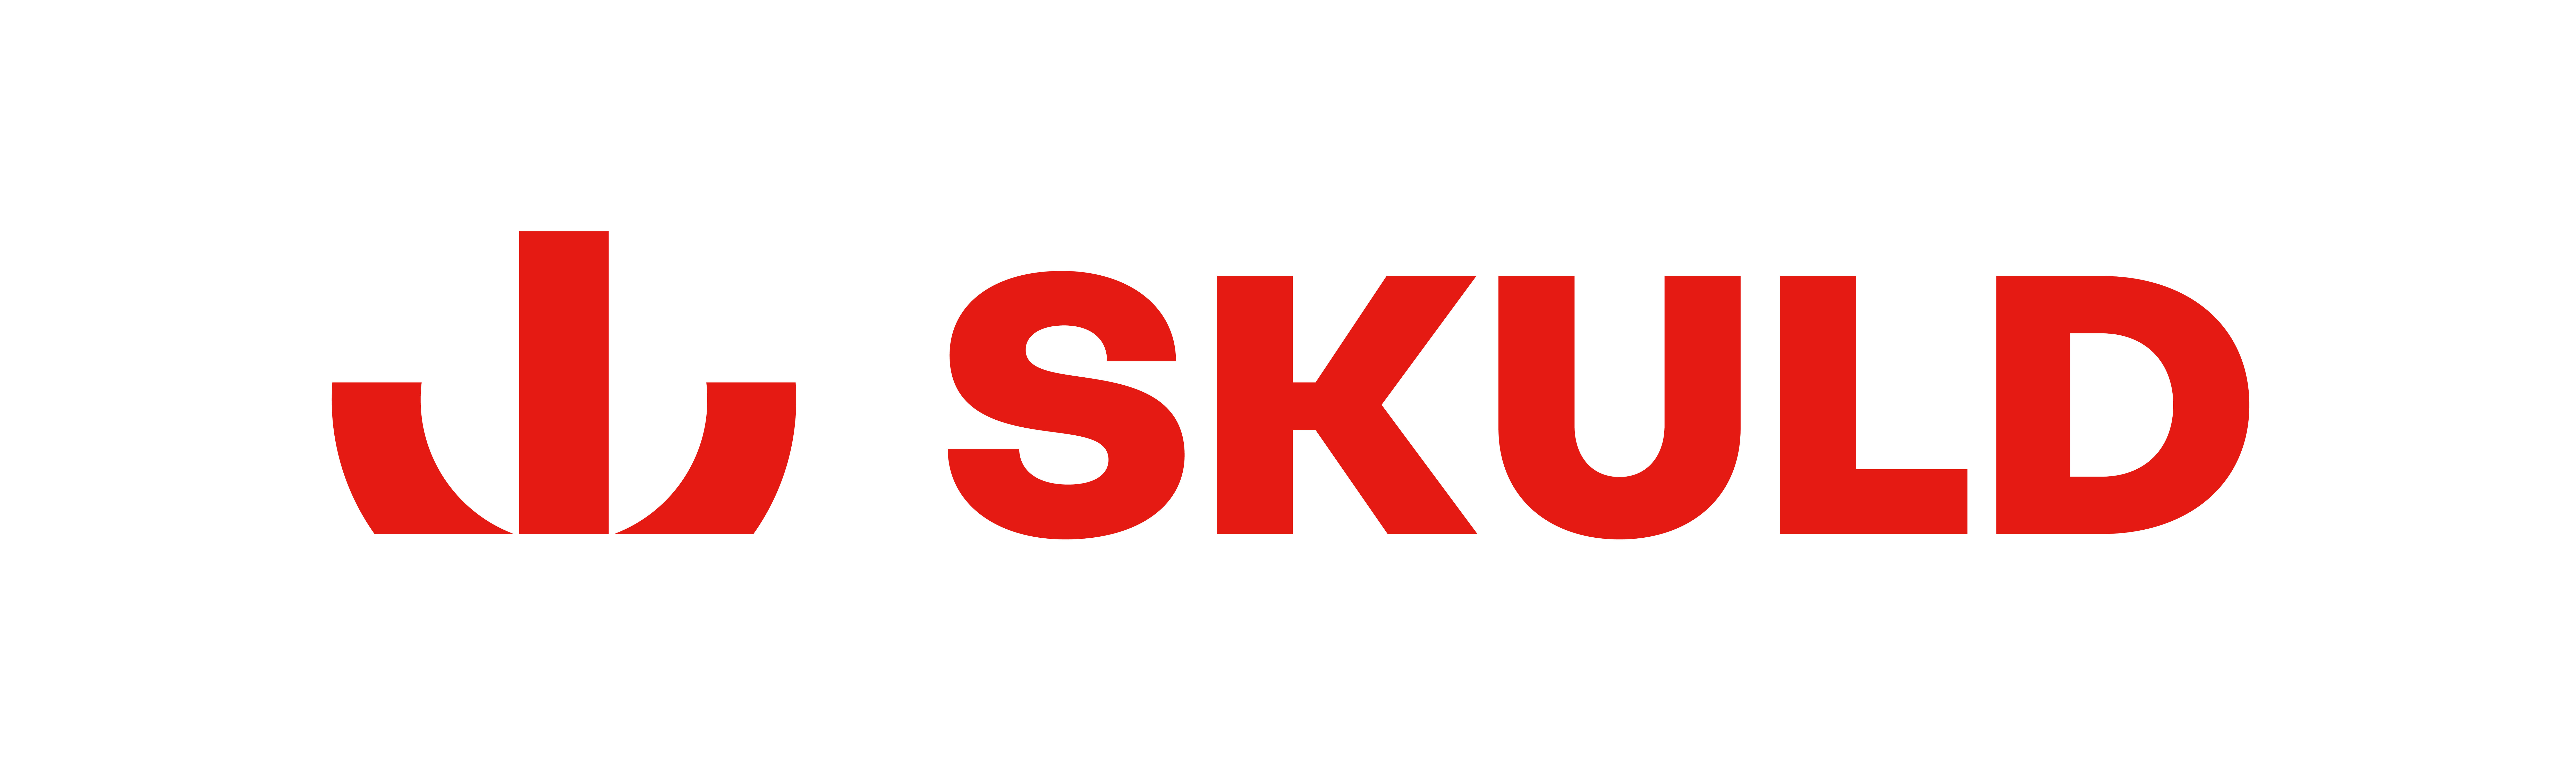 Skuld_logo_lockup_red-1